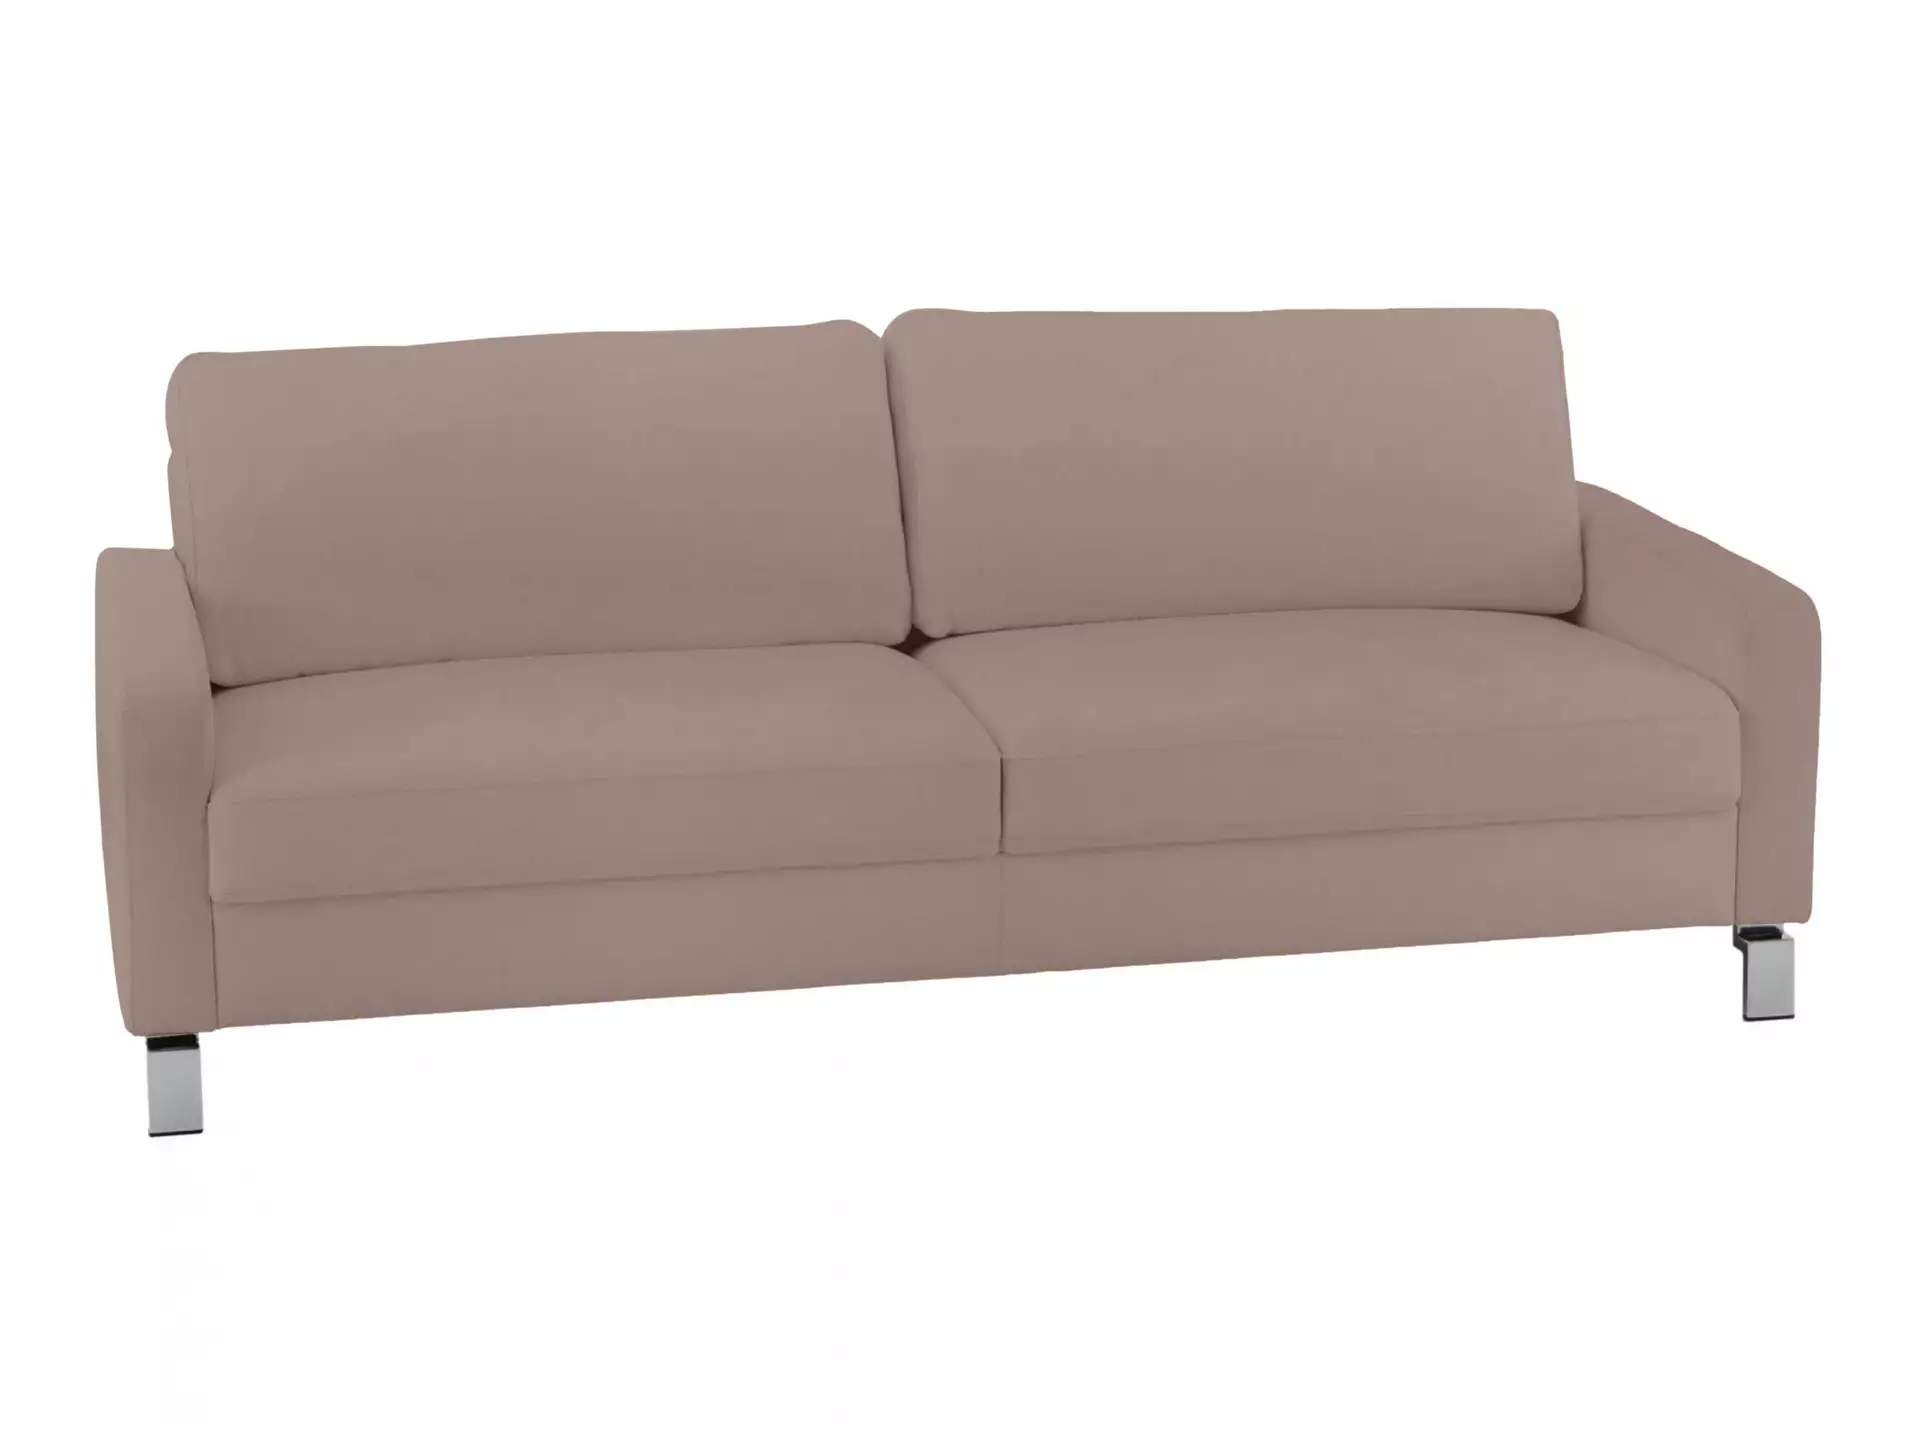 Sofa Interims Basic B: 204 cm Candy / Farbe: Asphalt / Material: Leder Basic